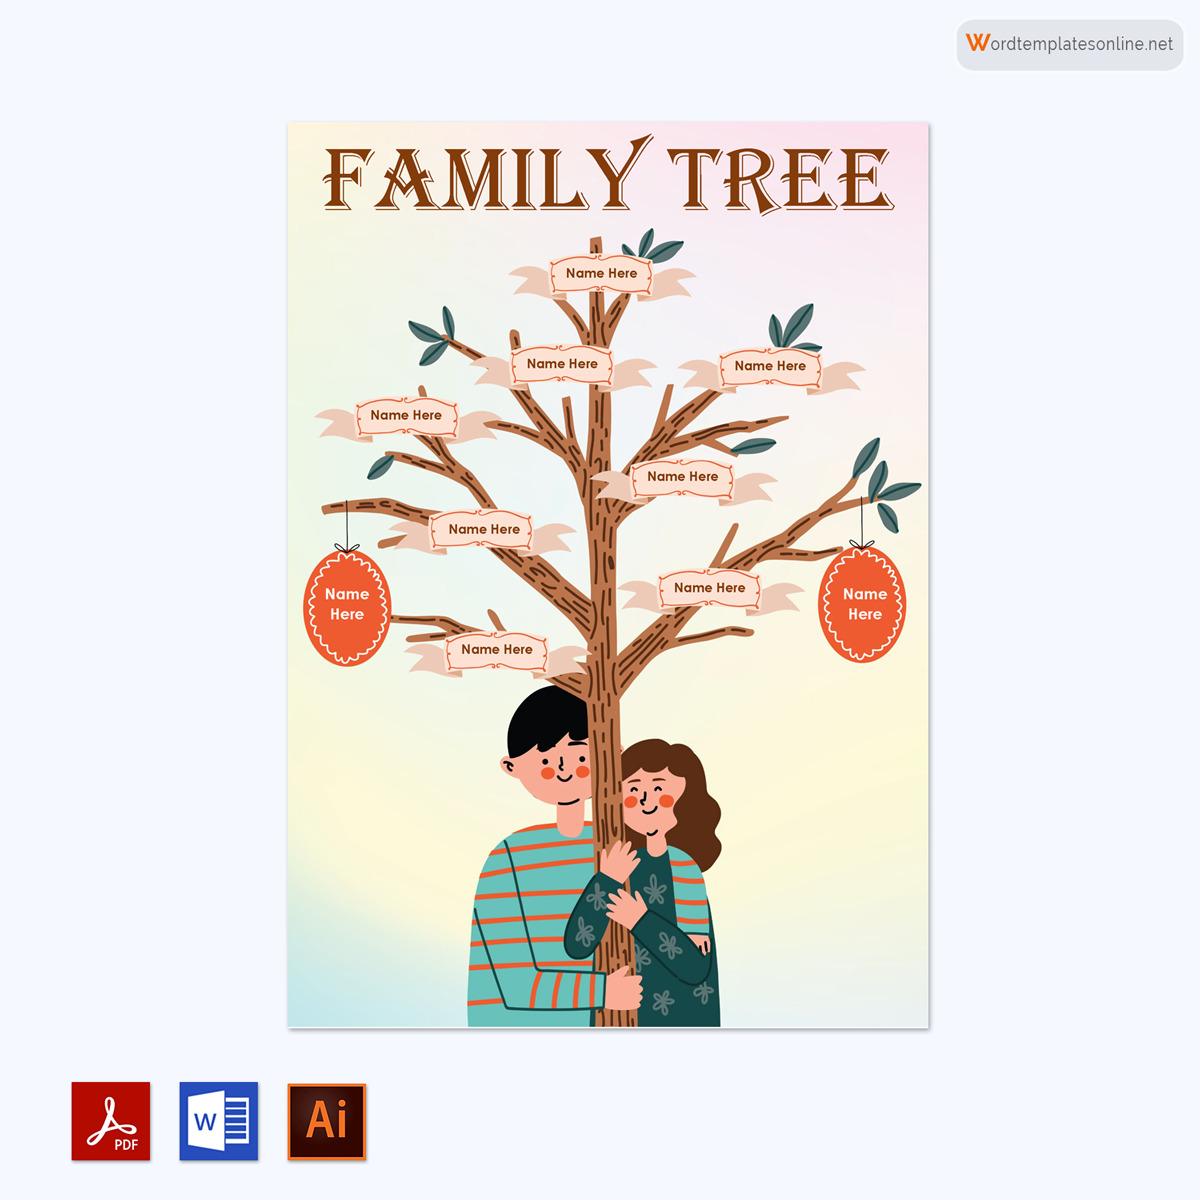  family tree template google docs 03